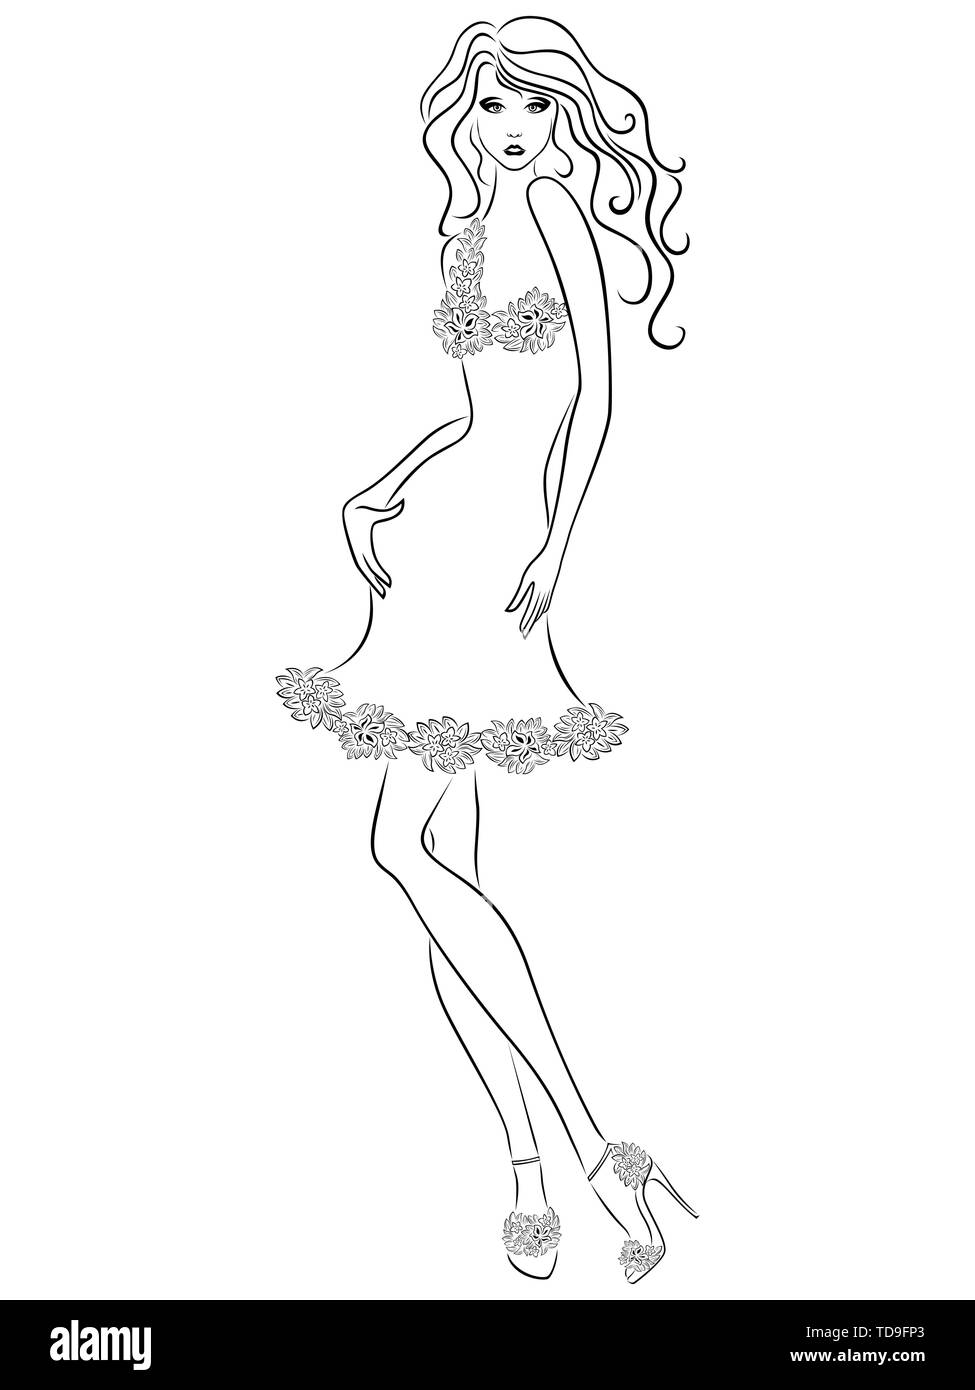 Ð¡nuire à femme avec slim figure en robe élégante isolé sur le fond blanc, dessin à la main contour vectoriel Illustration de Vecteur